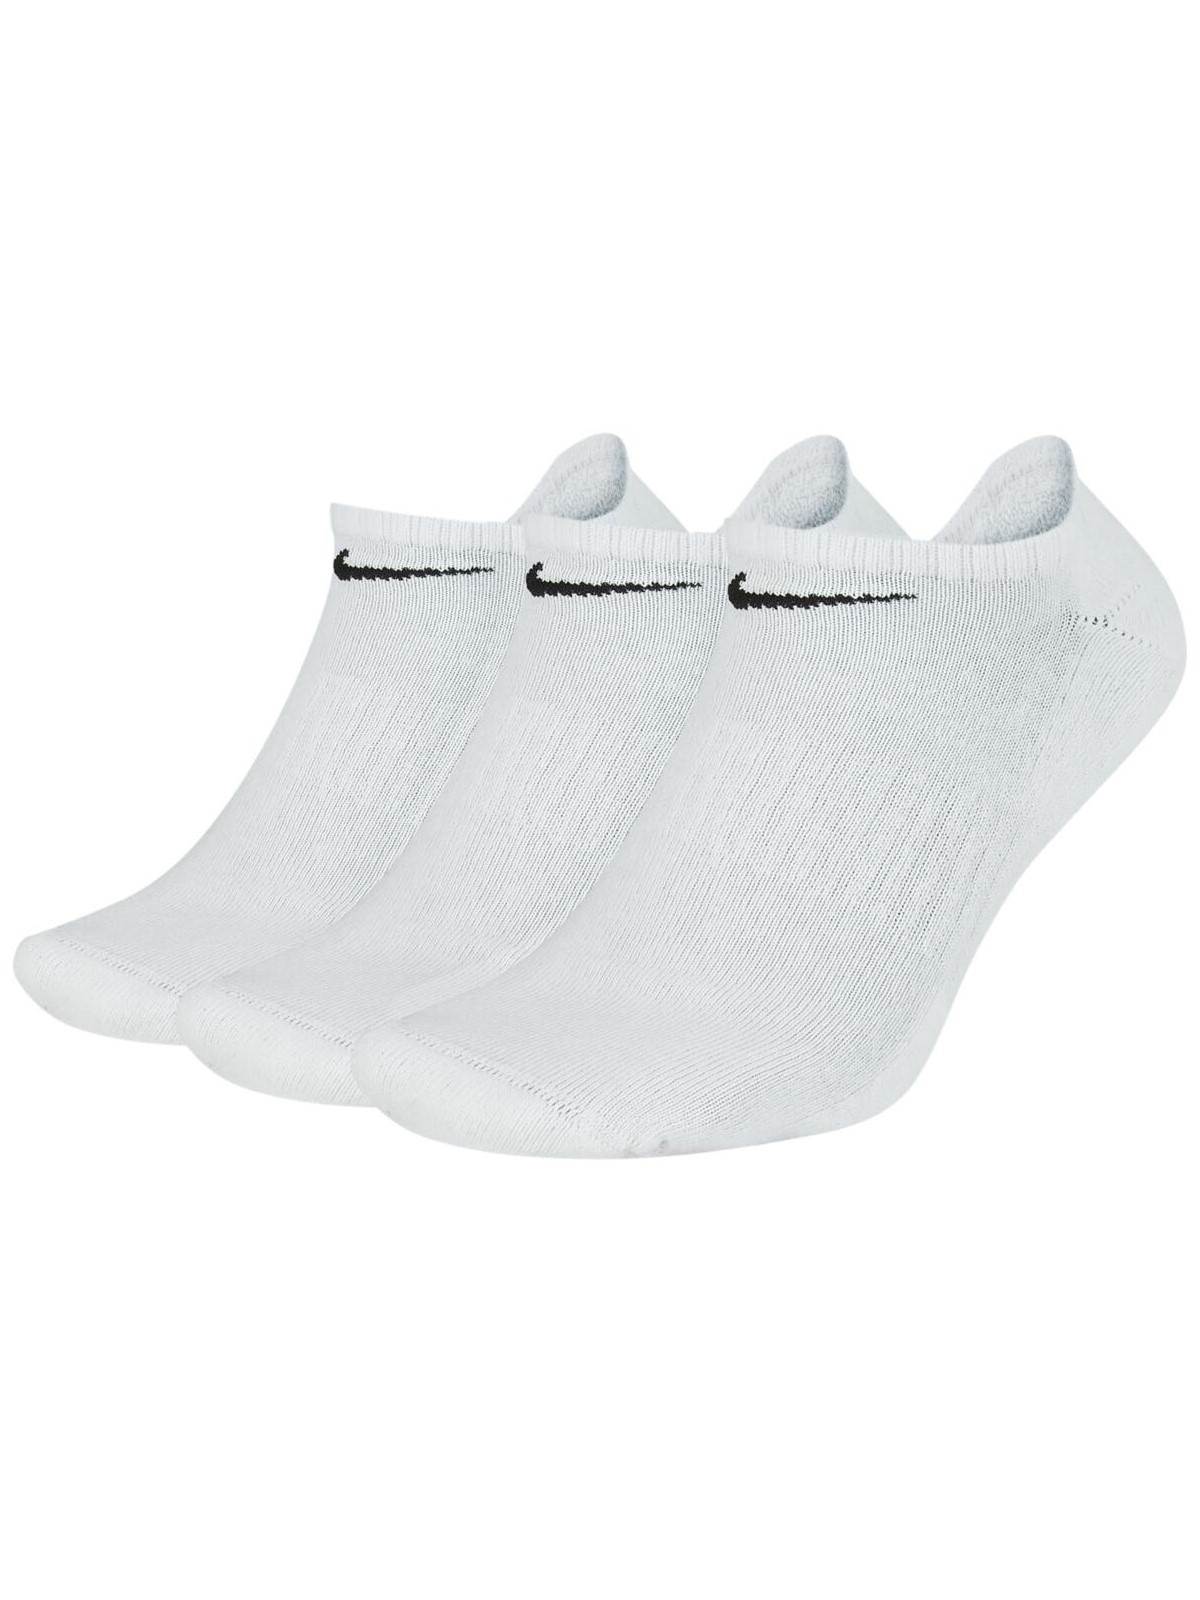 Комплект носков унисекс Nike Everyday Cushion No-Show Socks разноцветных XL